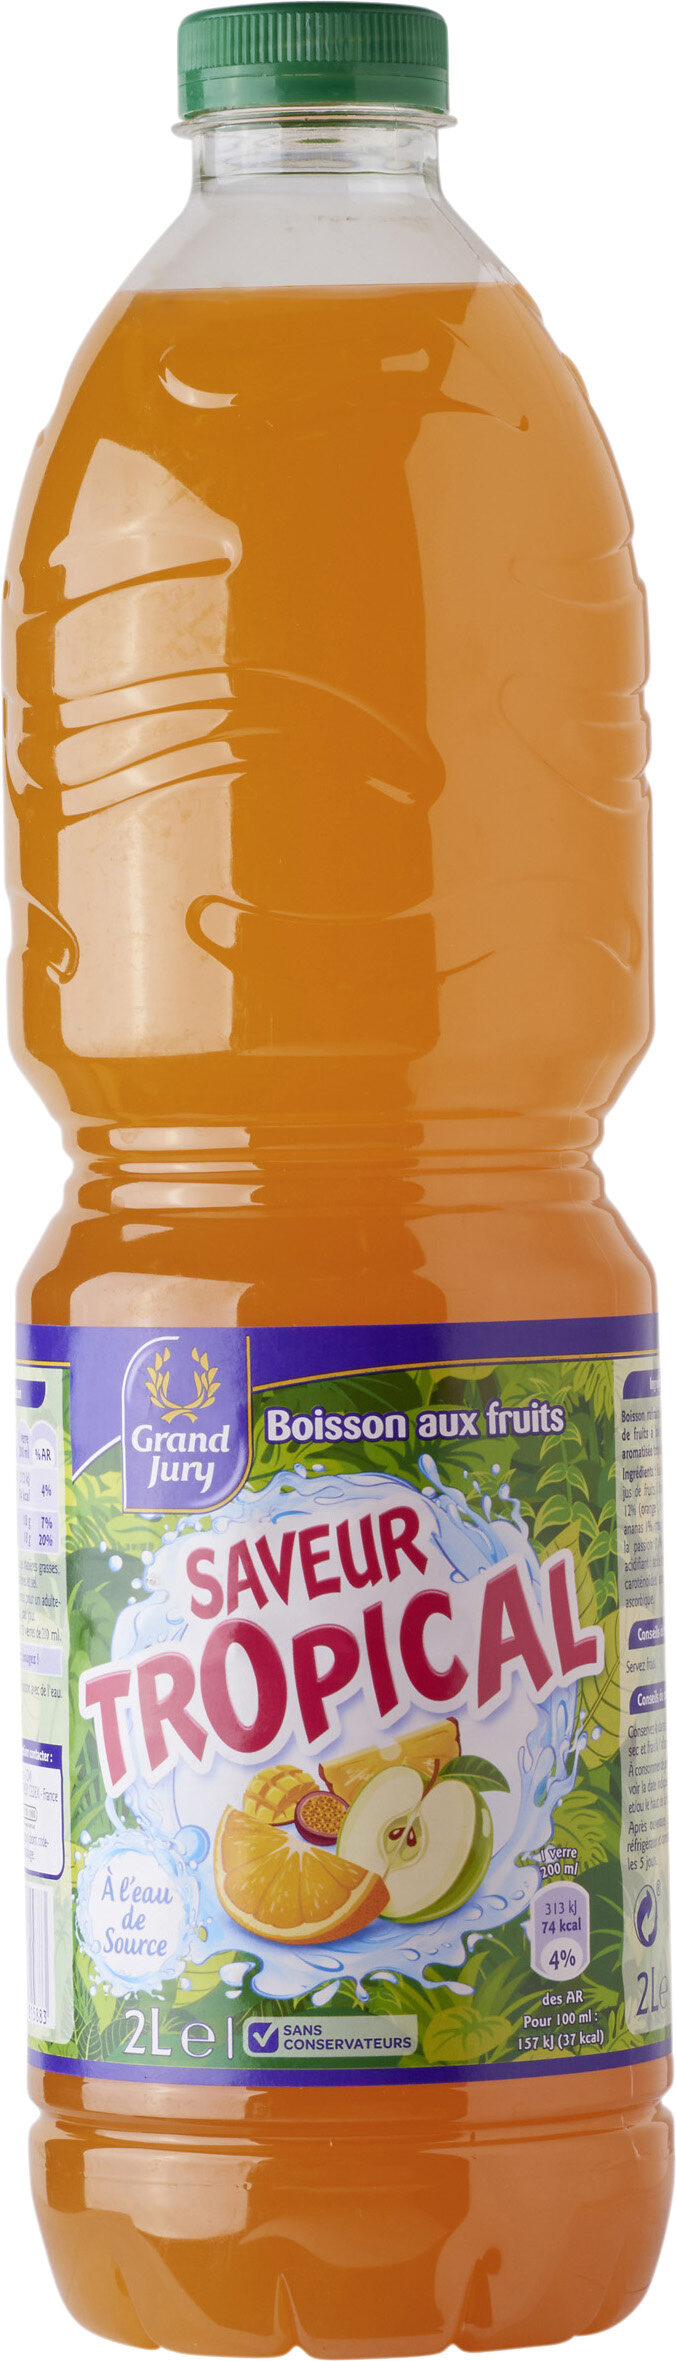 Boisson aux fruits Saveur Tropical - Product - fr